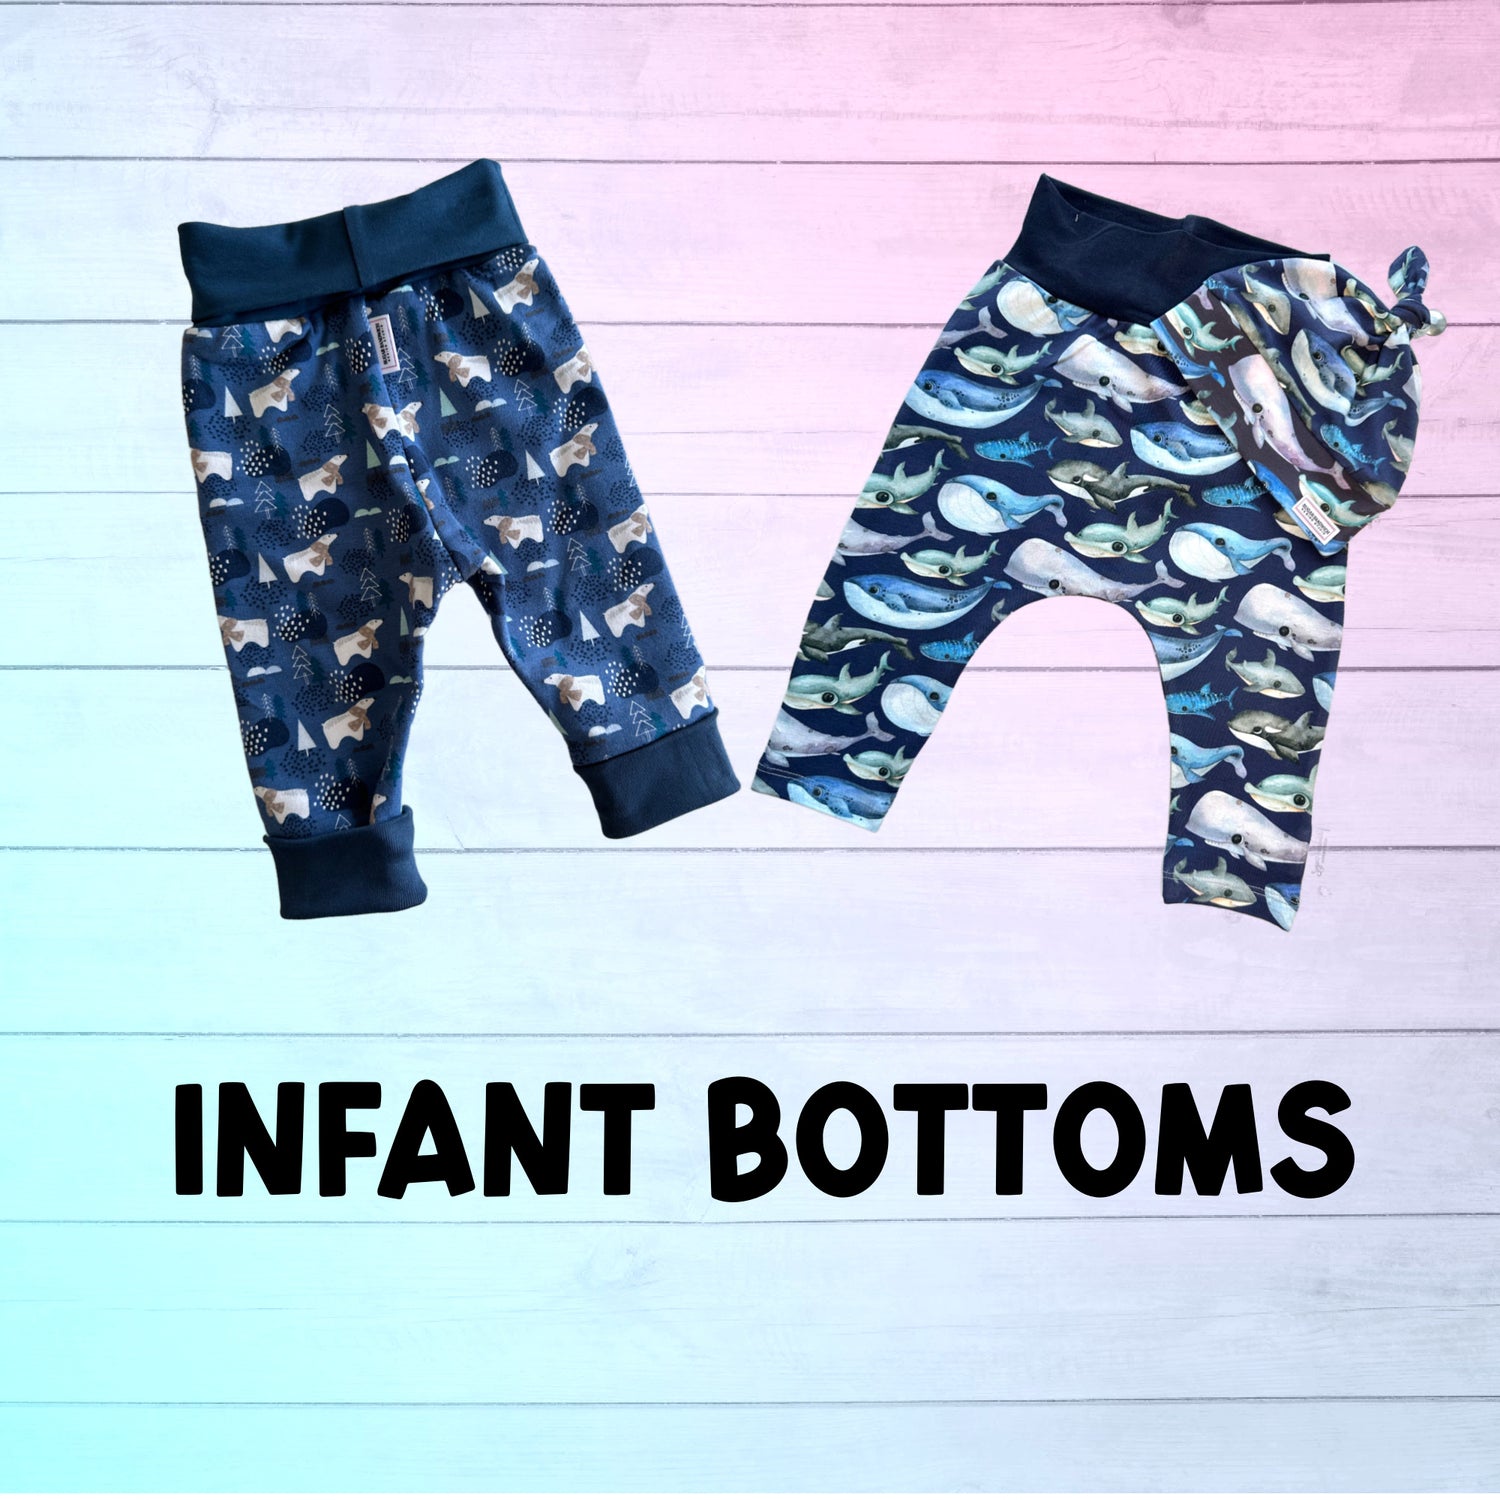 Infant Bottoms